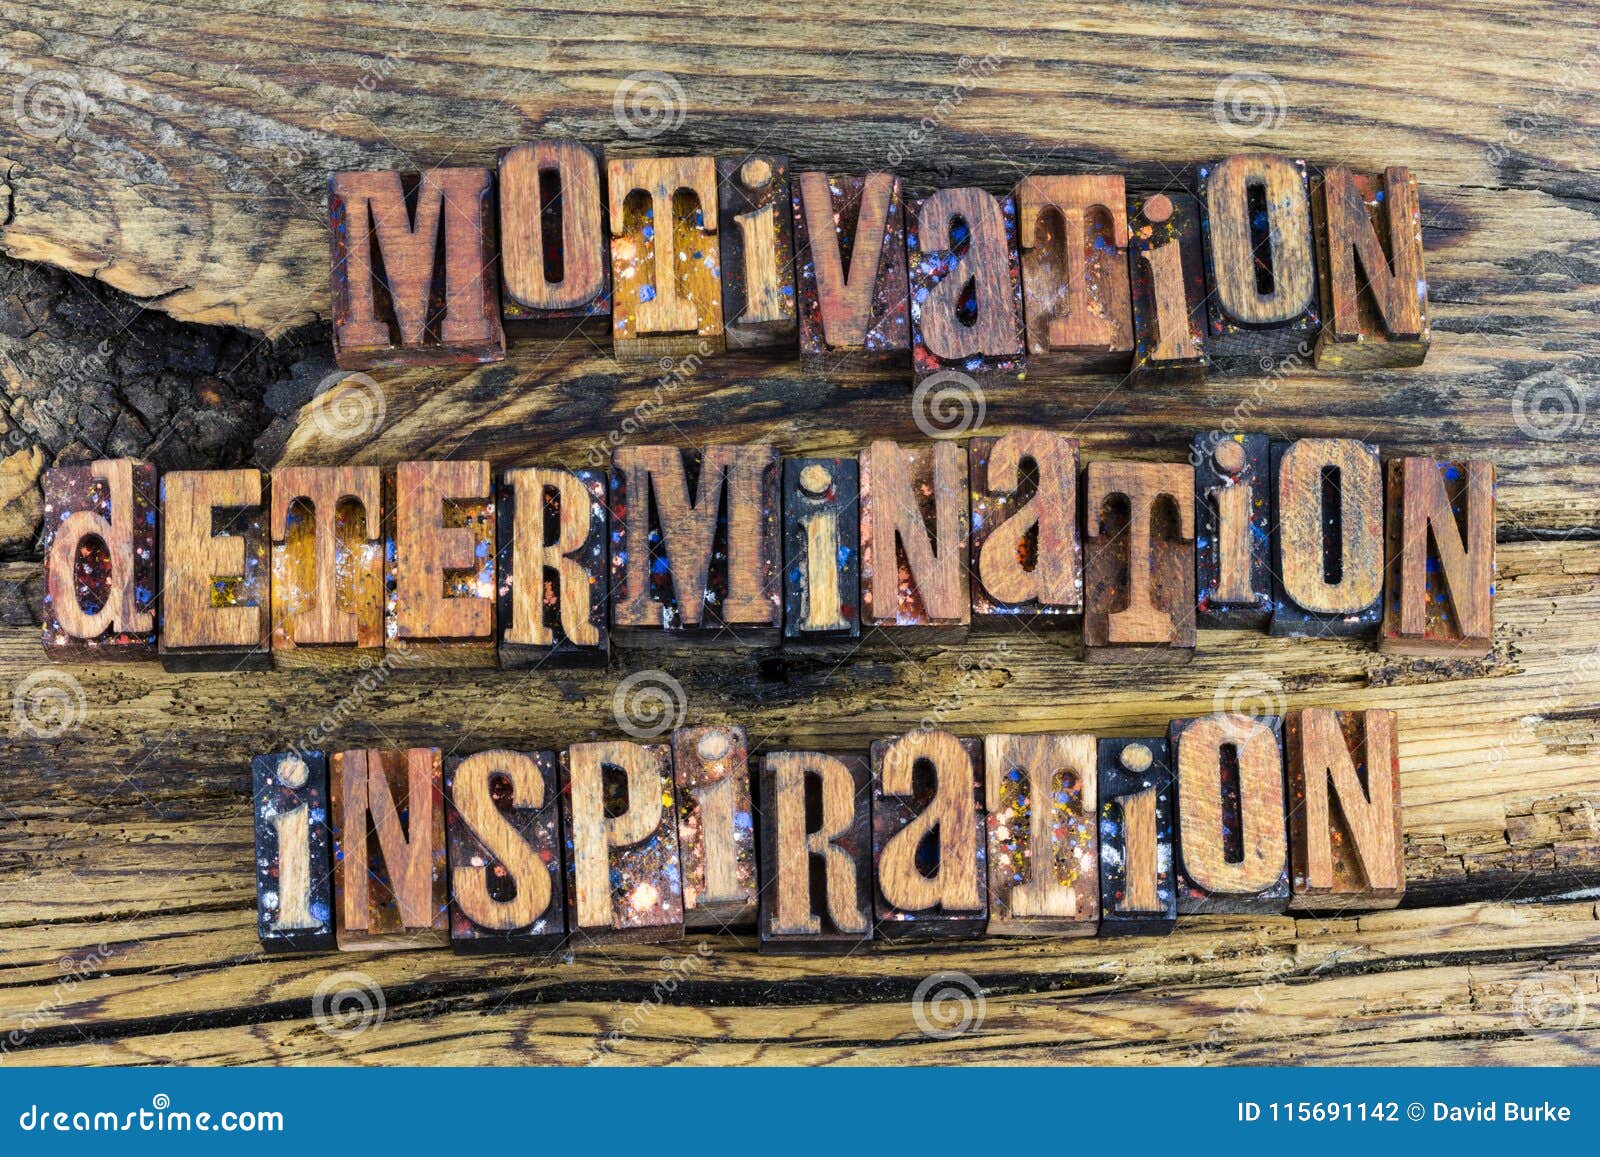 motivation determination inspiration adventure freedom challenge achievement